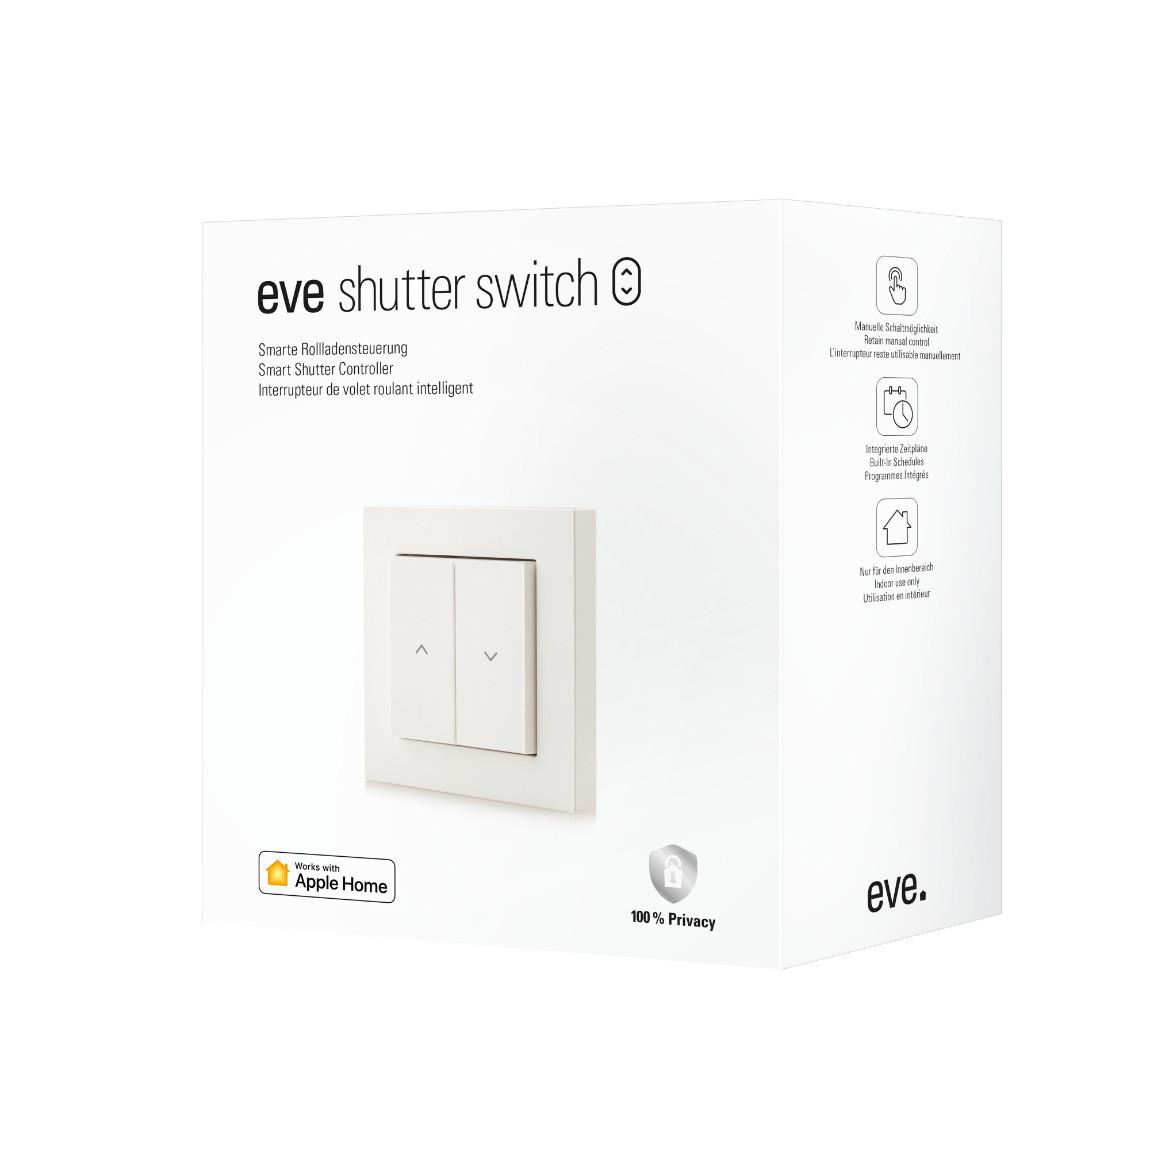 Eve Shutter Switch - Smarte Rollladensteuerung- Verpackung